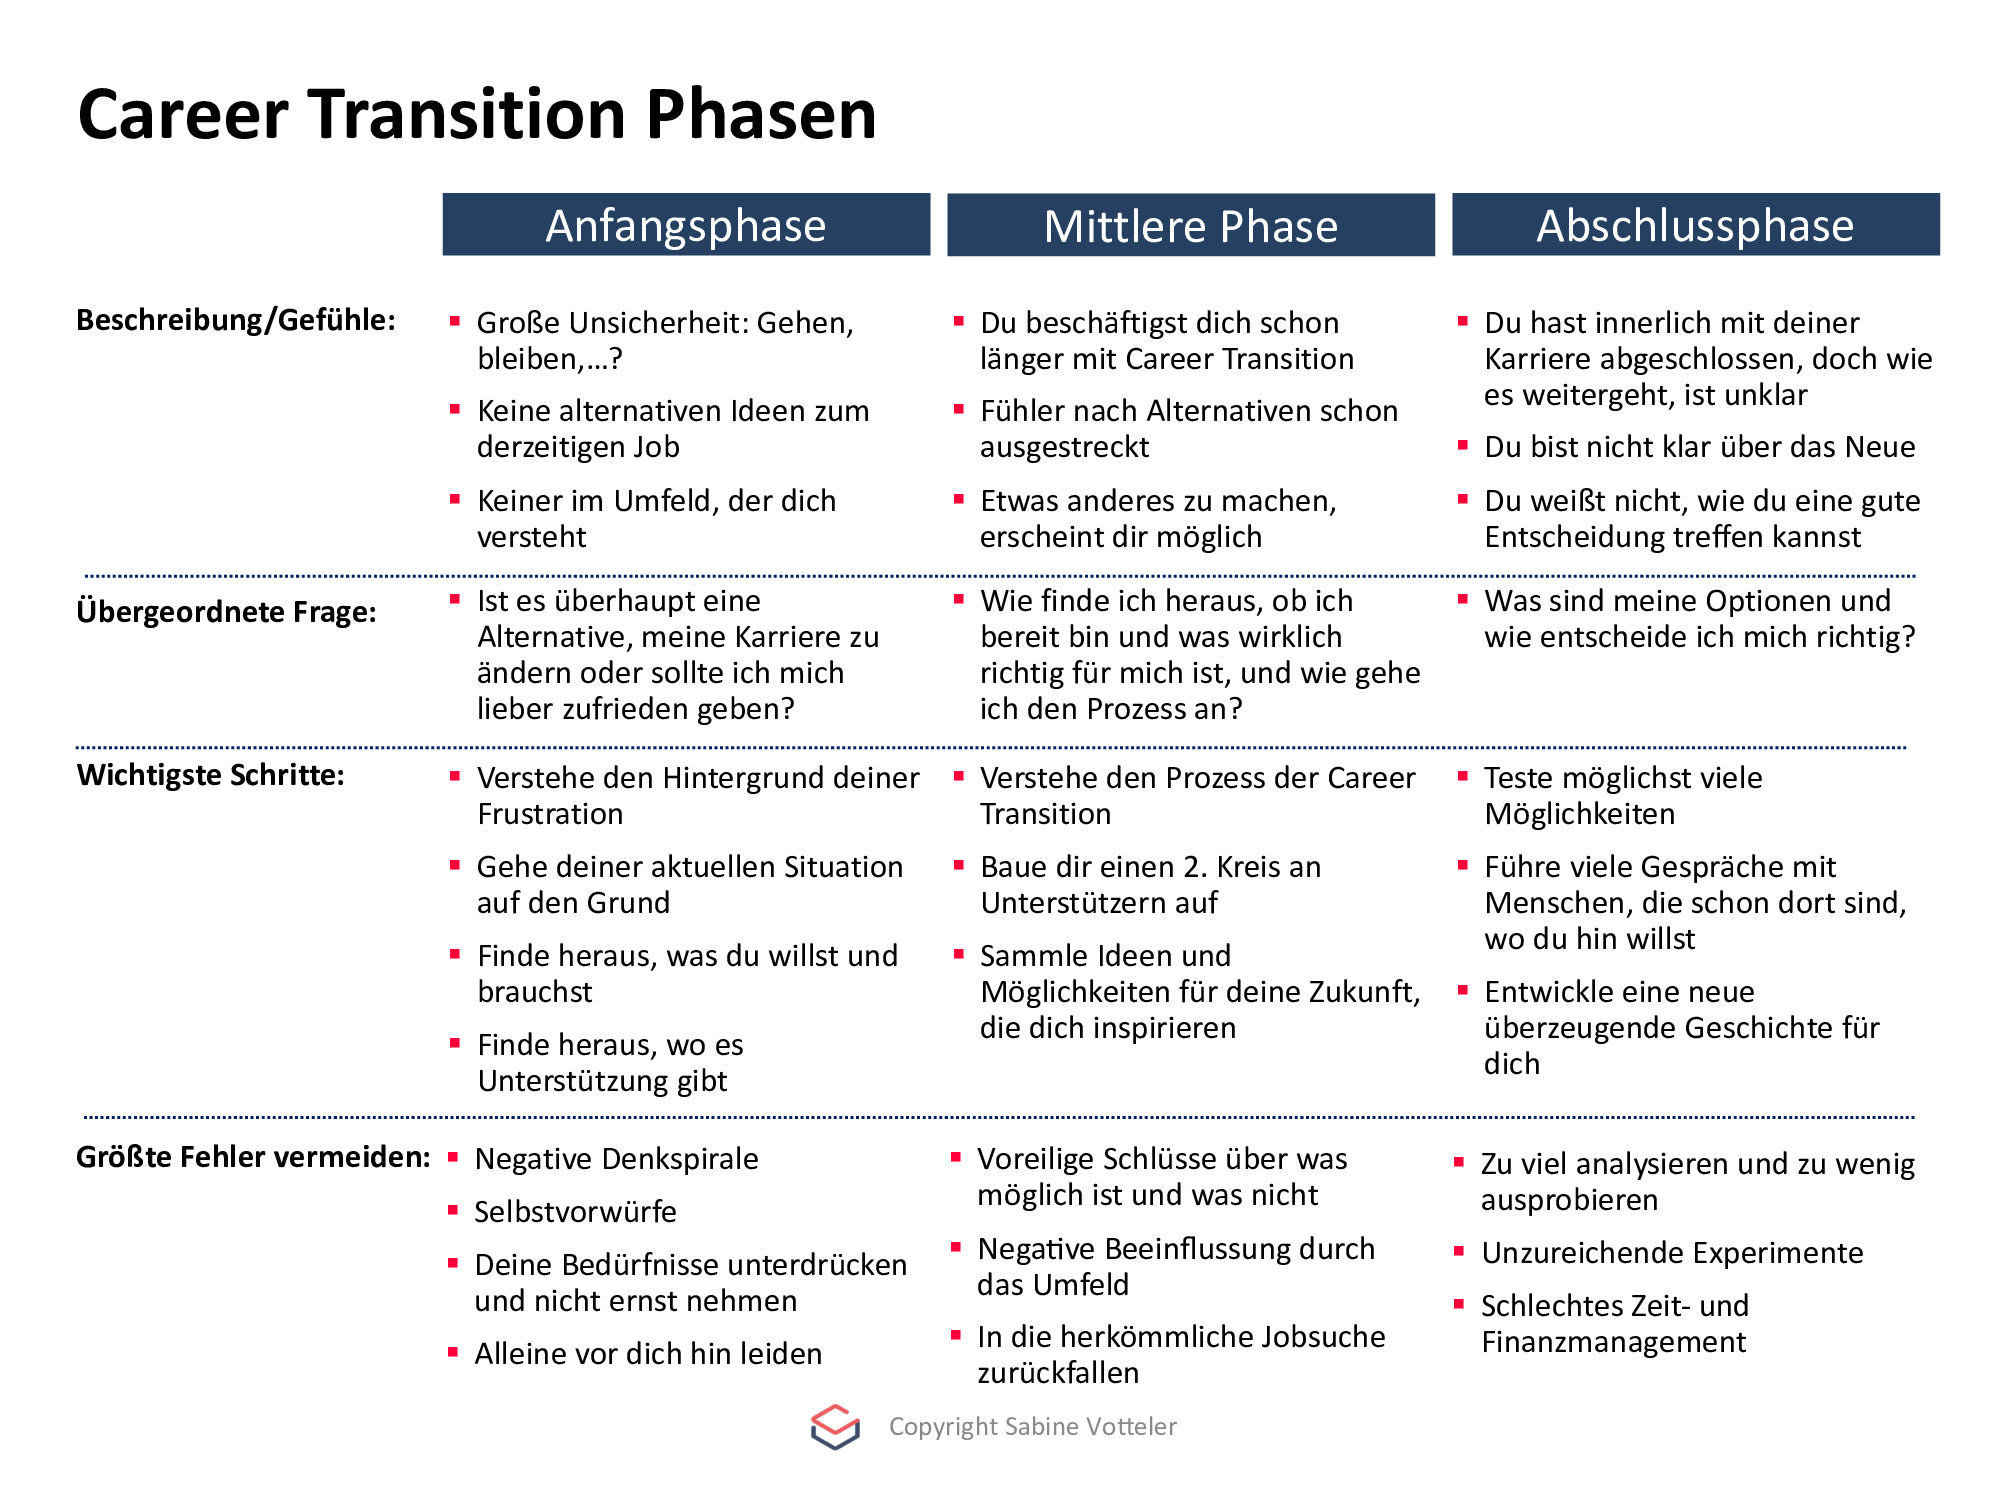 Berufliche Neuorientierung vorbereiten - 3 Phasen in der Career Transition